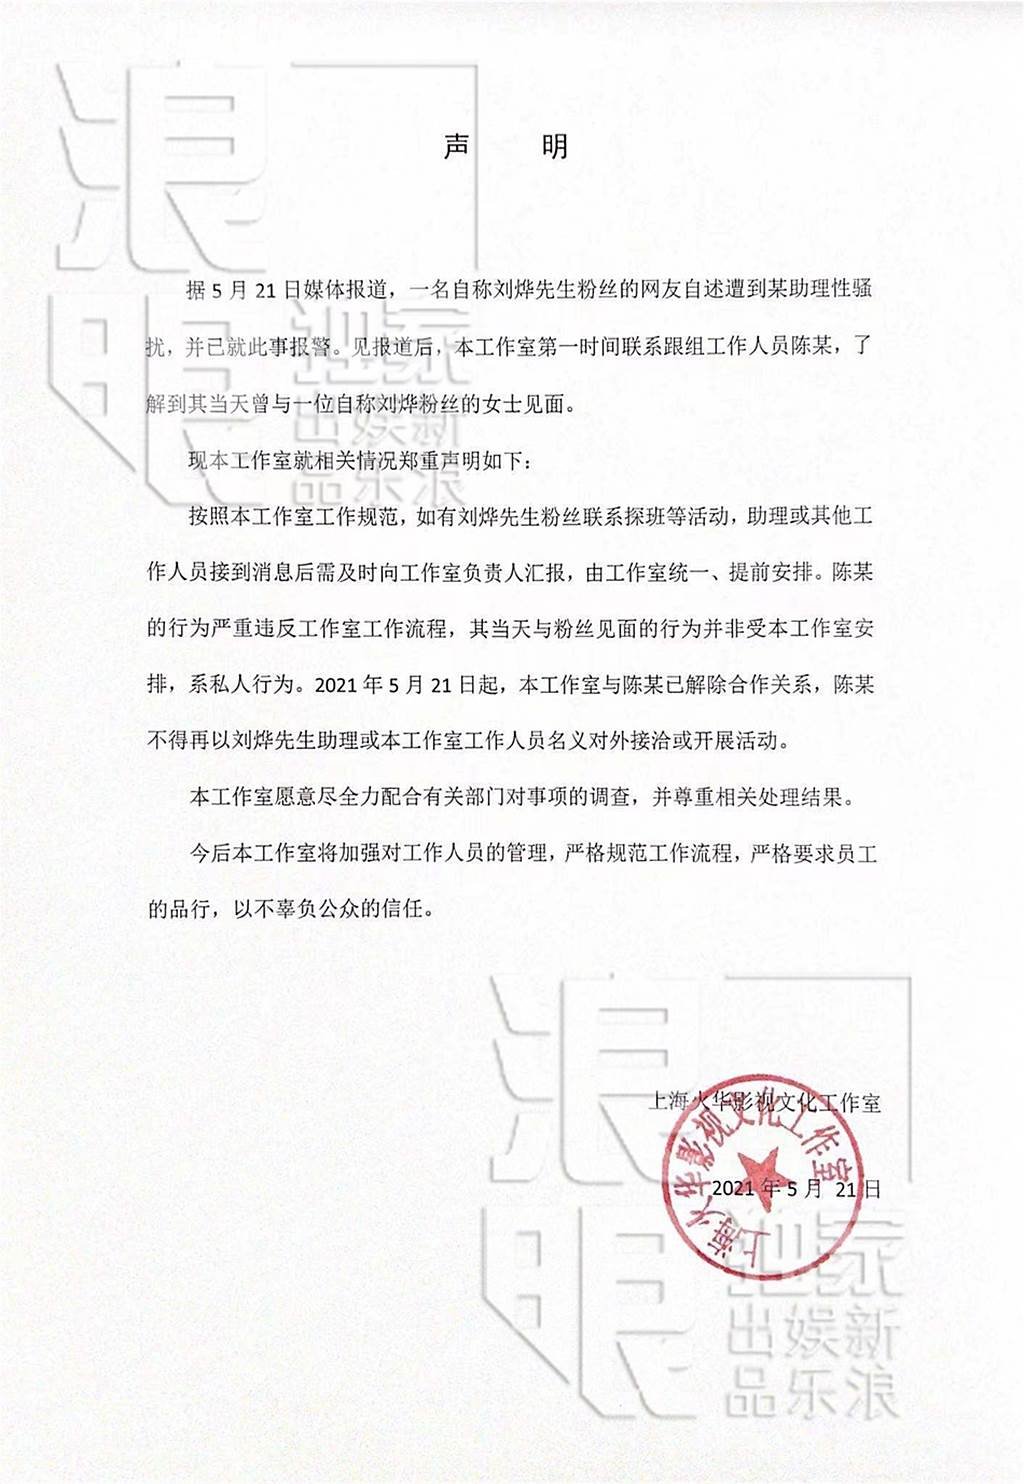 刘烨工作室发声明与该助理终止合作关系。